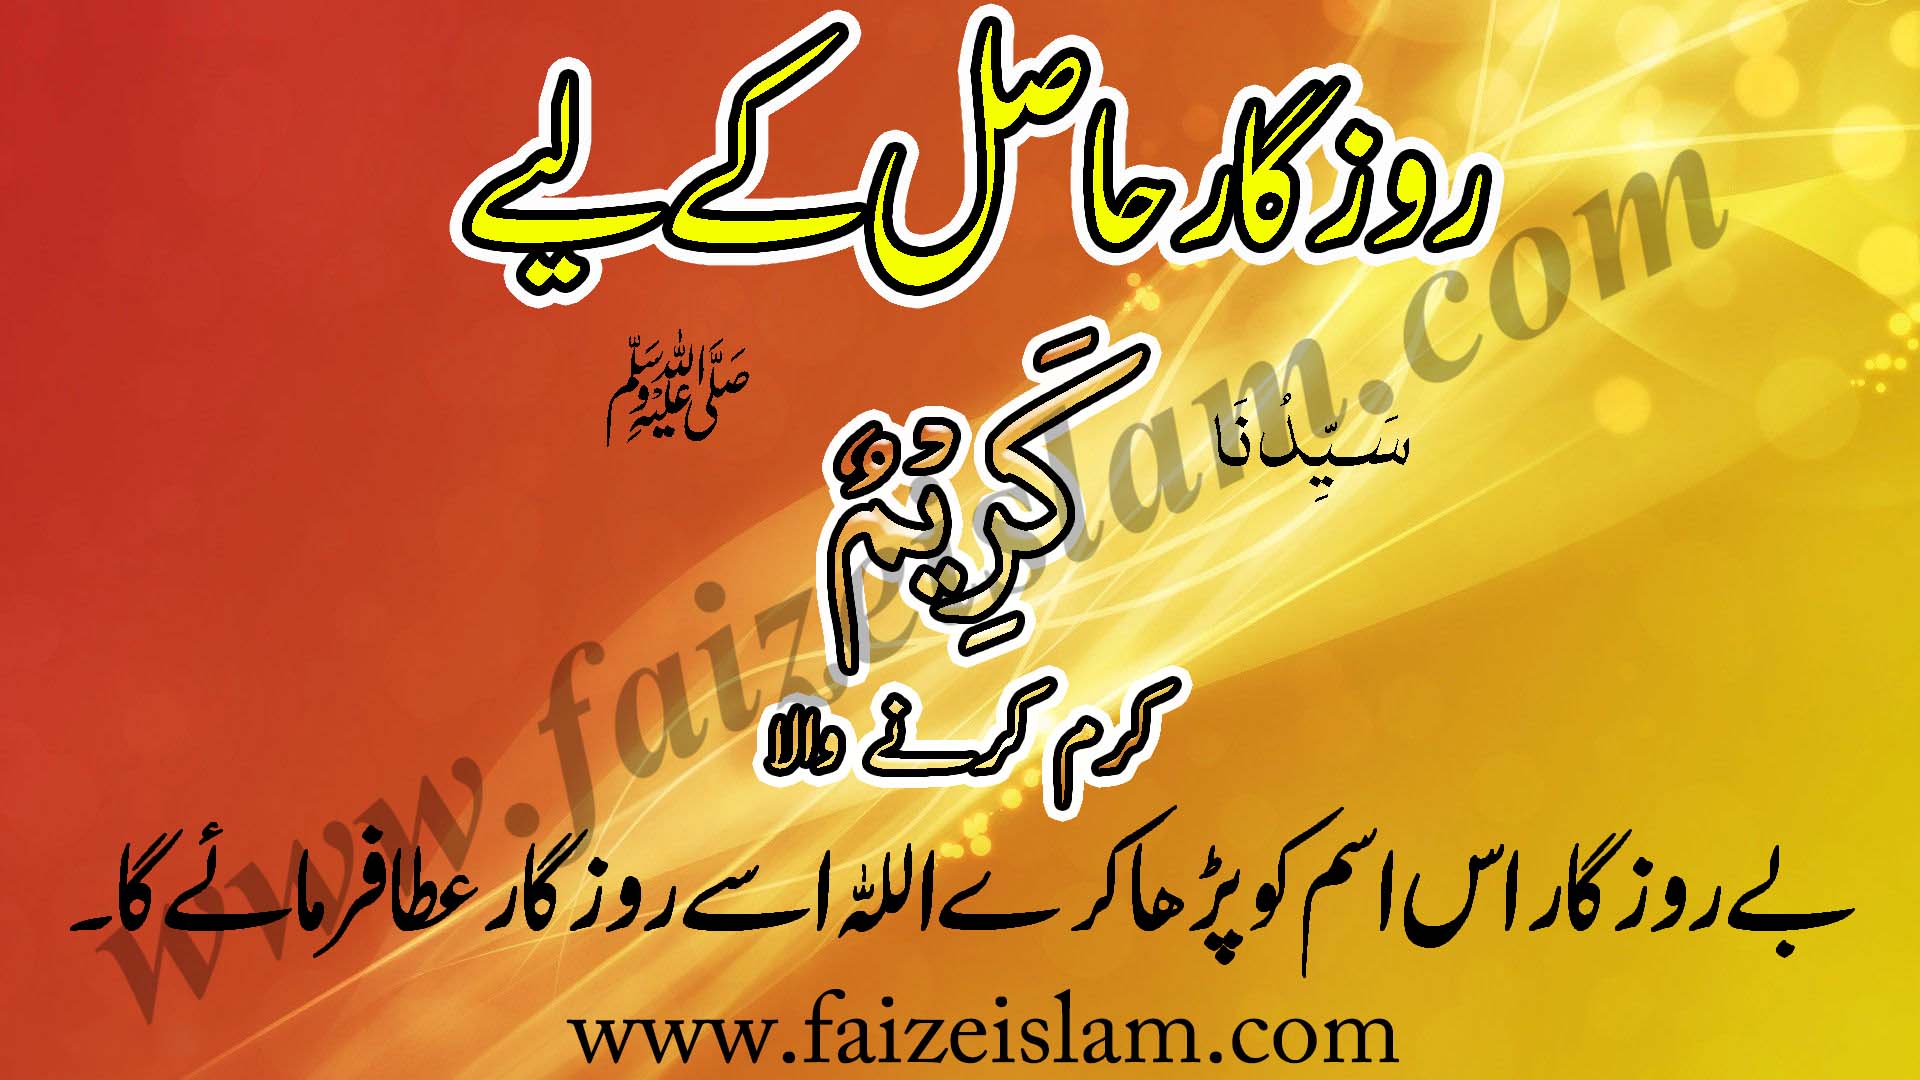 Wazifa for Job - Naukari Kay Liye Wazifa In Urdu